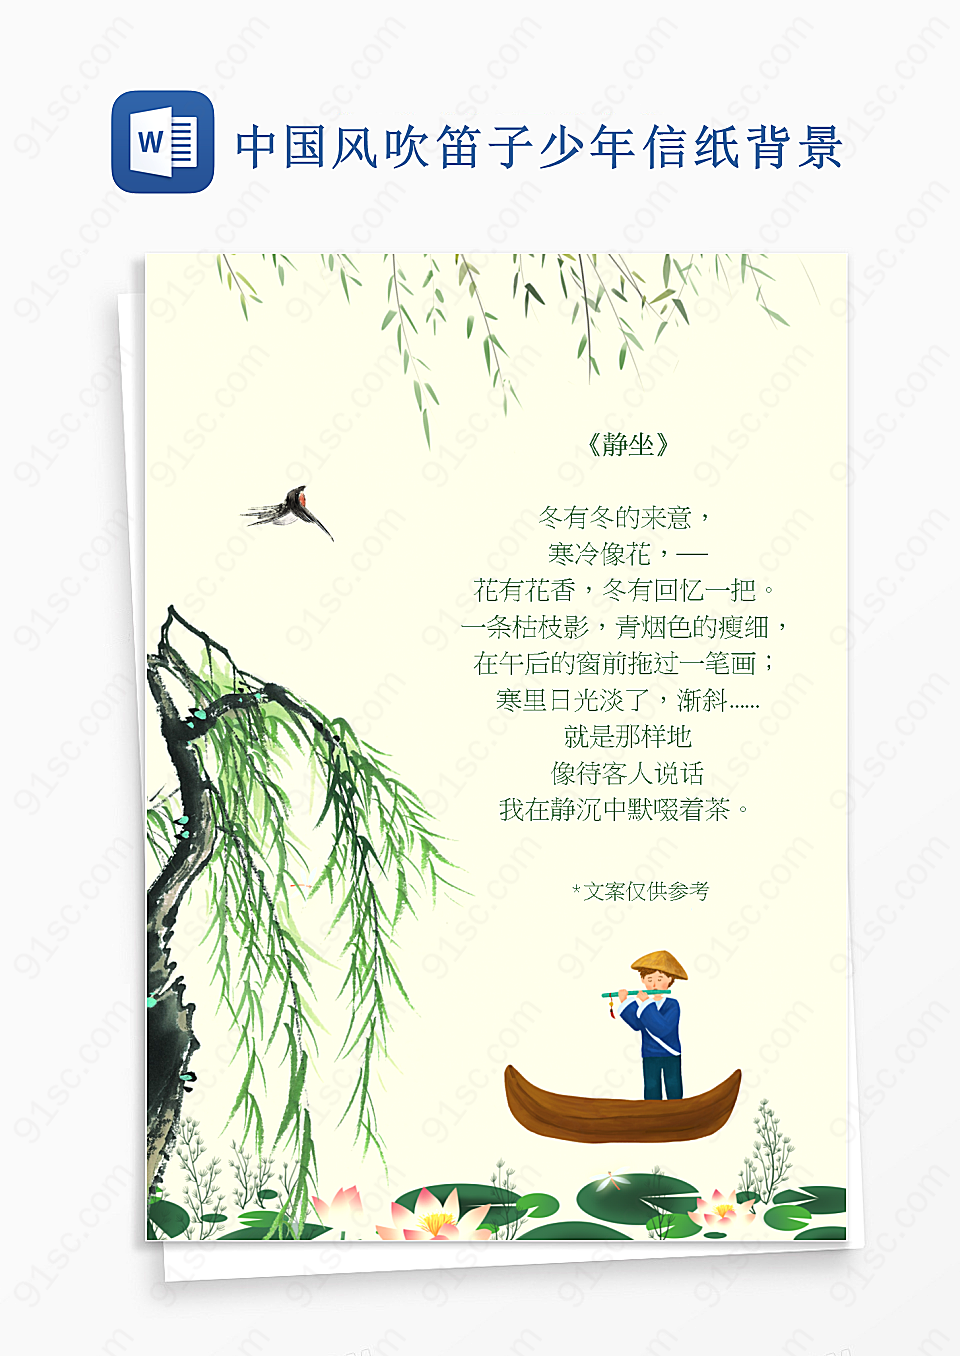 中国风吹笛子少年信纸背景